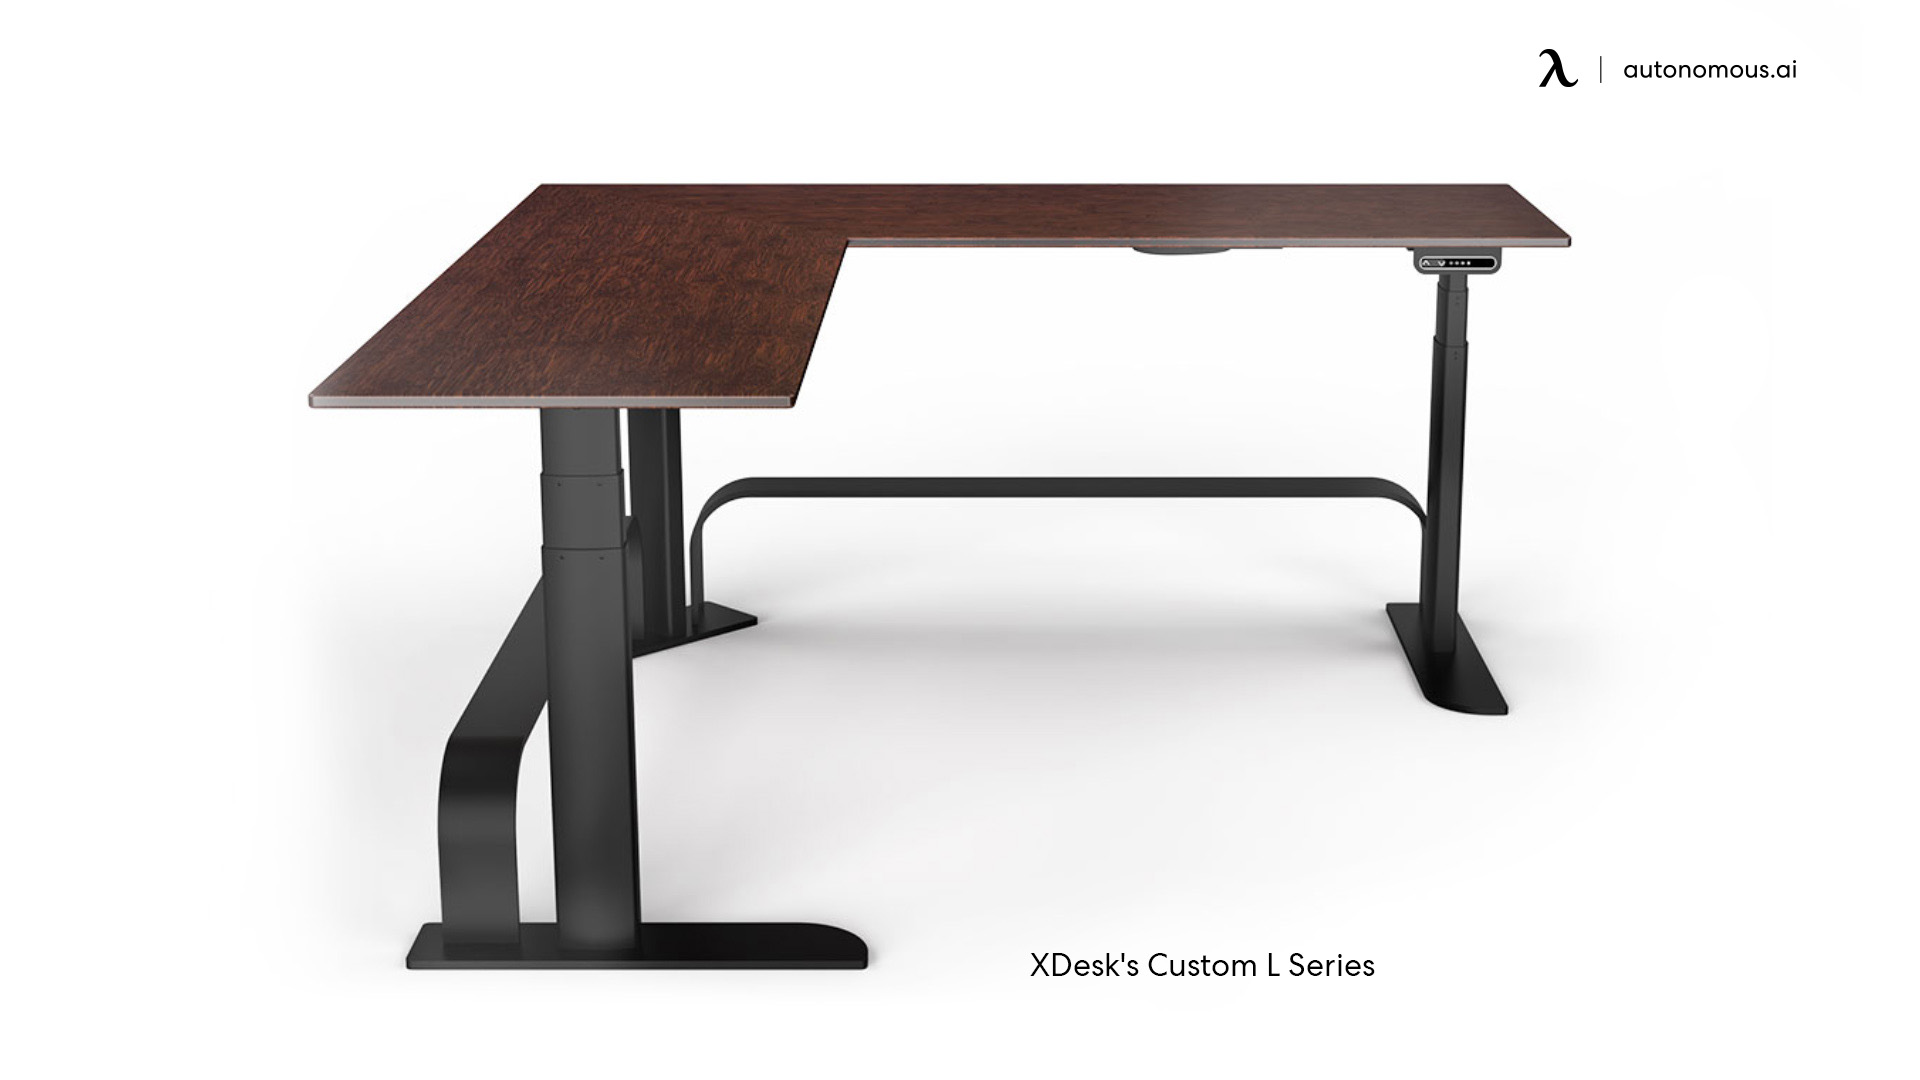 XDesk Custom L Series Desk